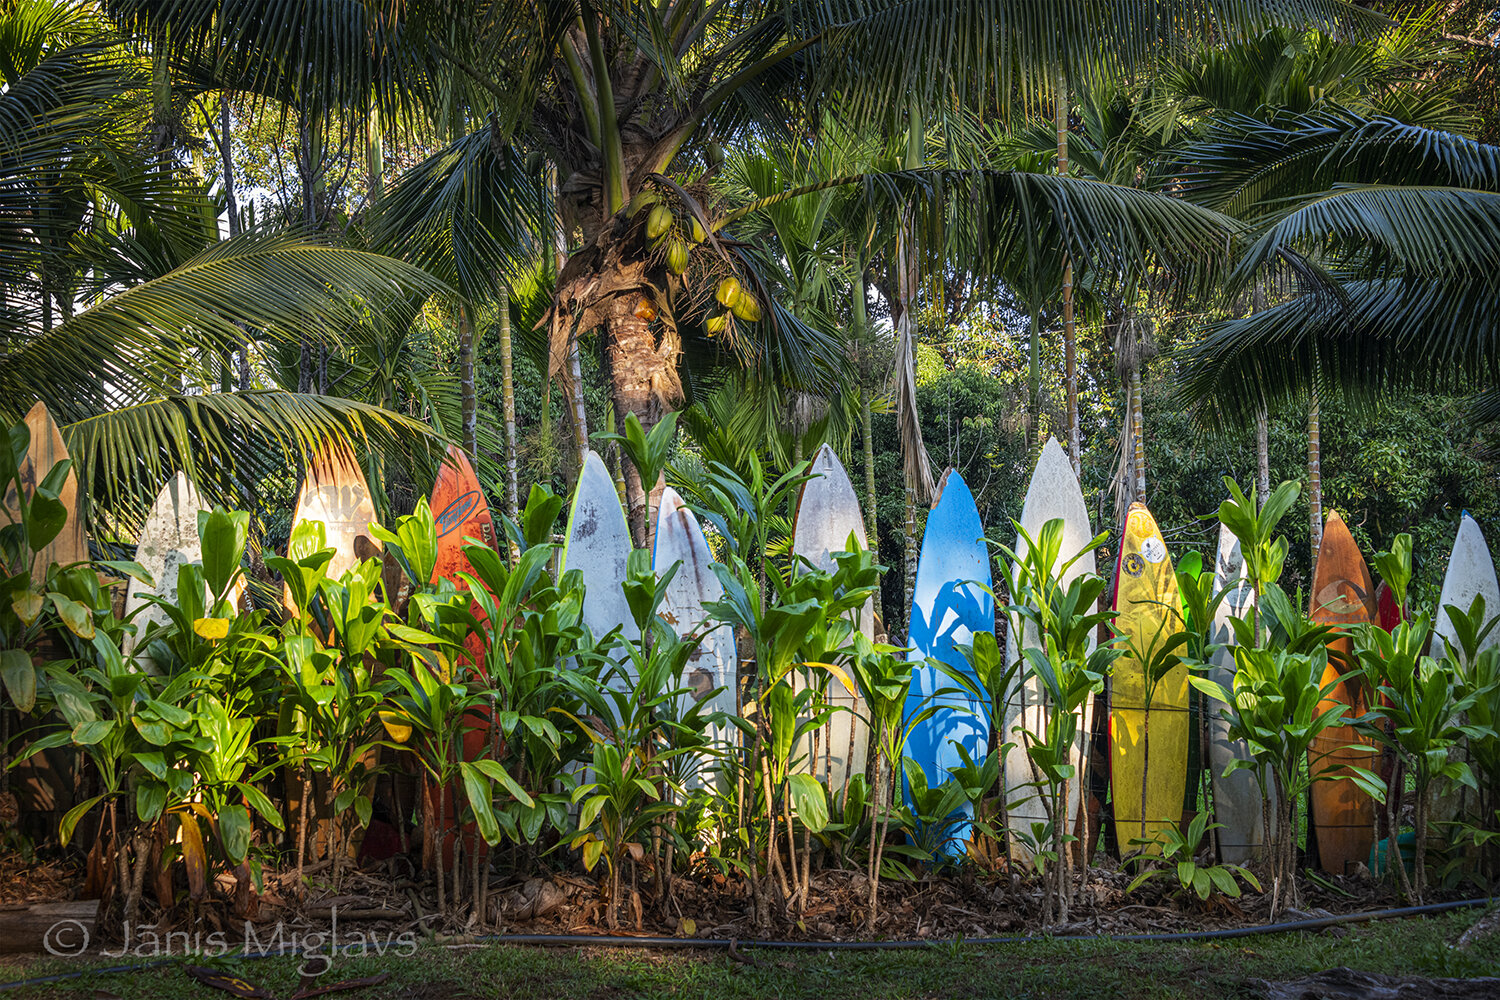 Surfboard Fence near Haiku, Maui